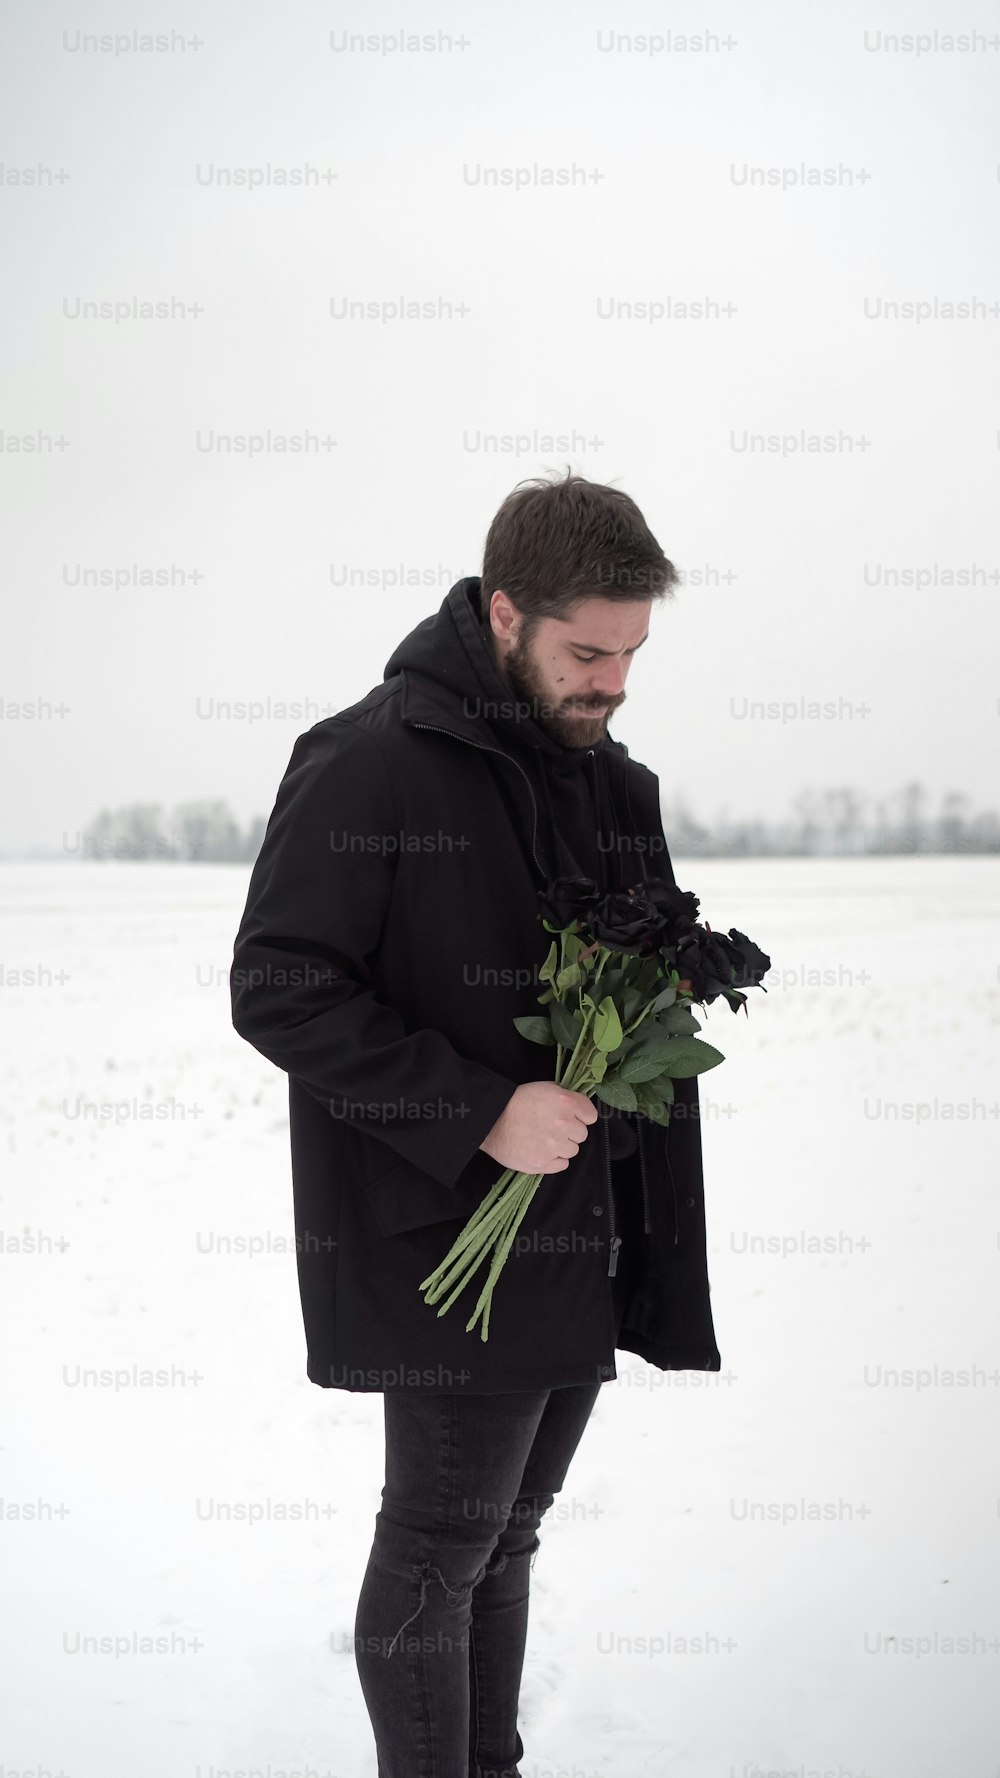 un uomo in piedi nella neve con in mano un mazzo di fiori